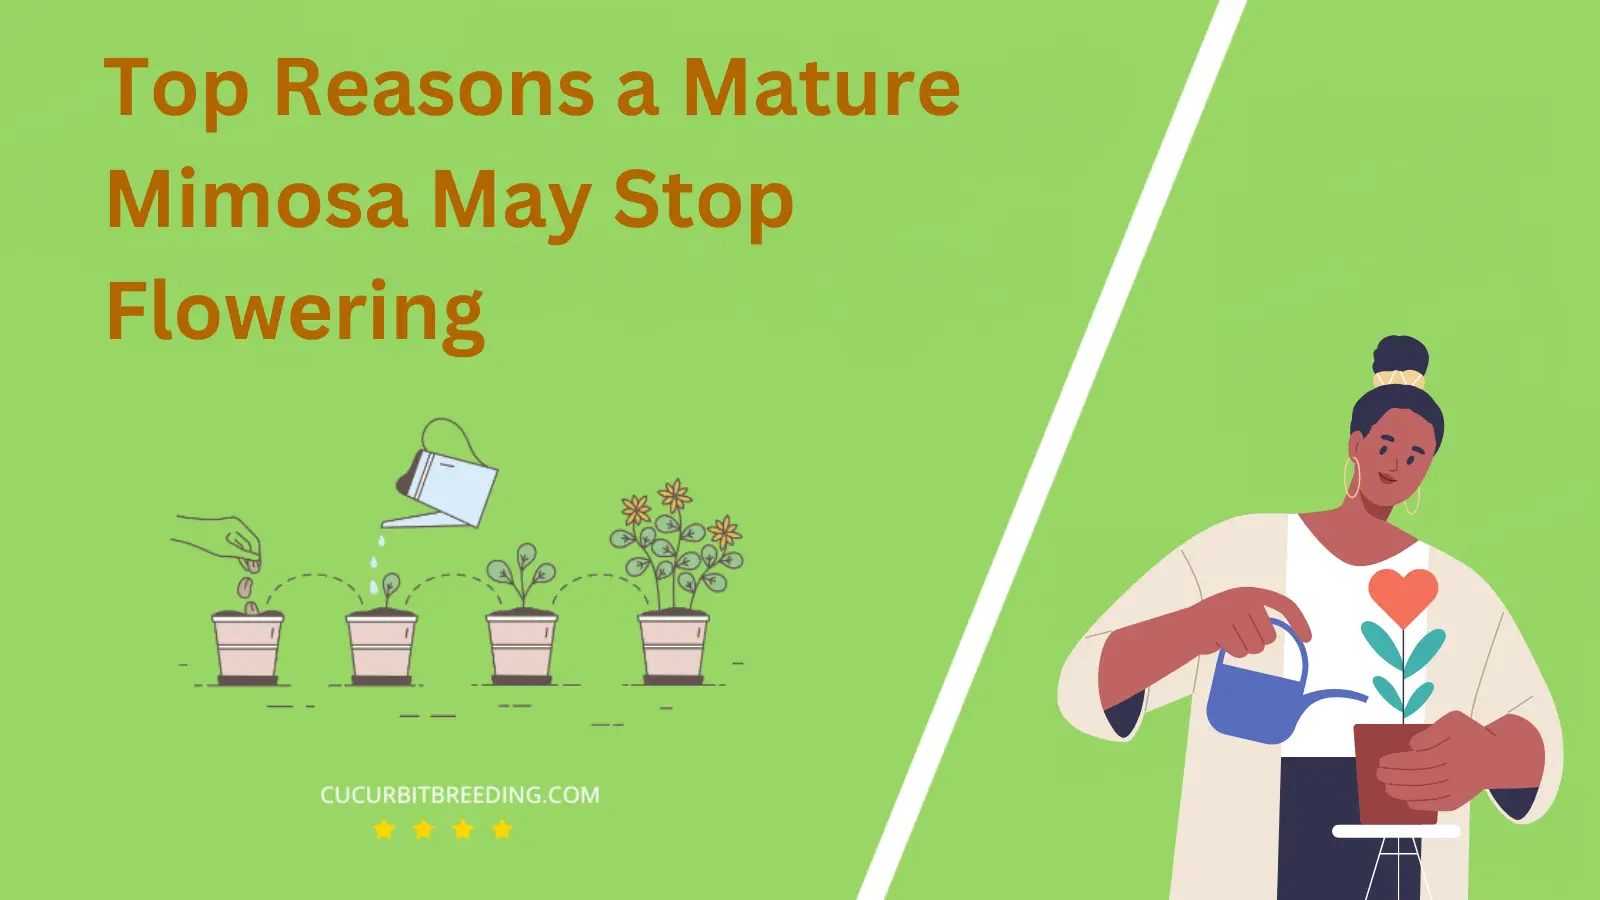 Top Reasons a Mature Mimosa May Stop Flowering